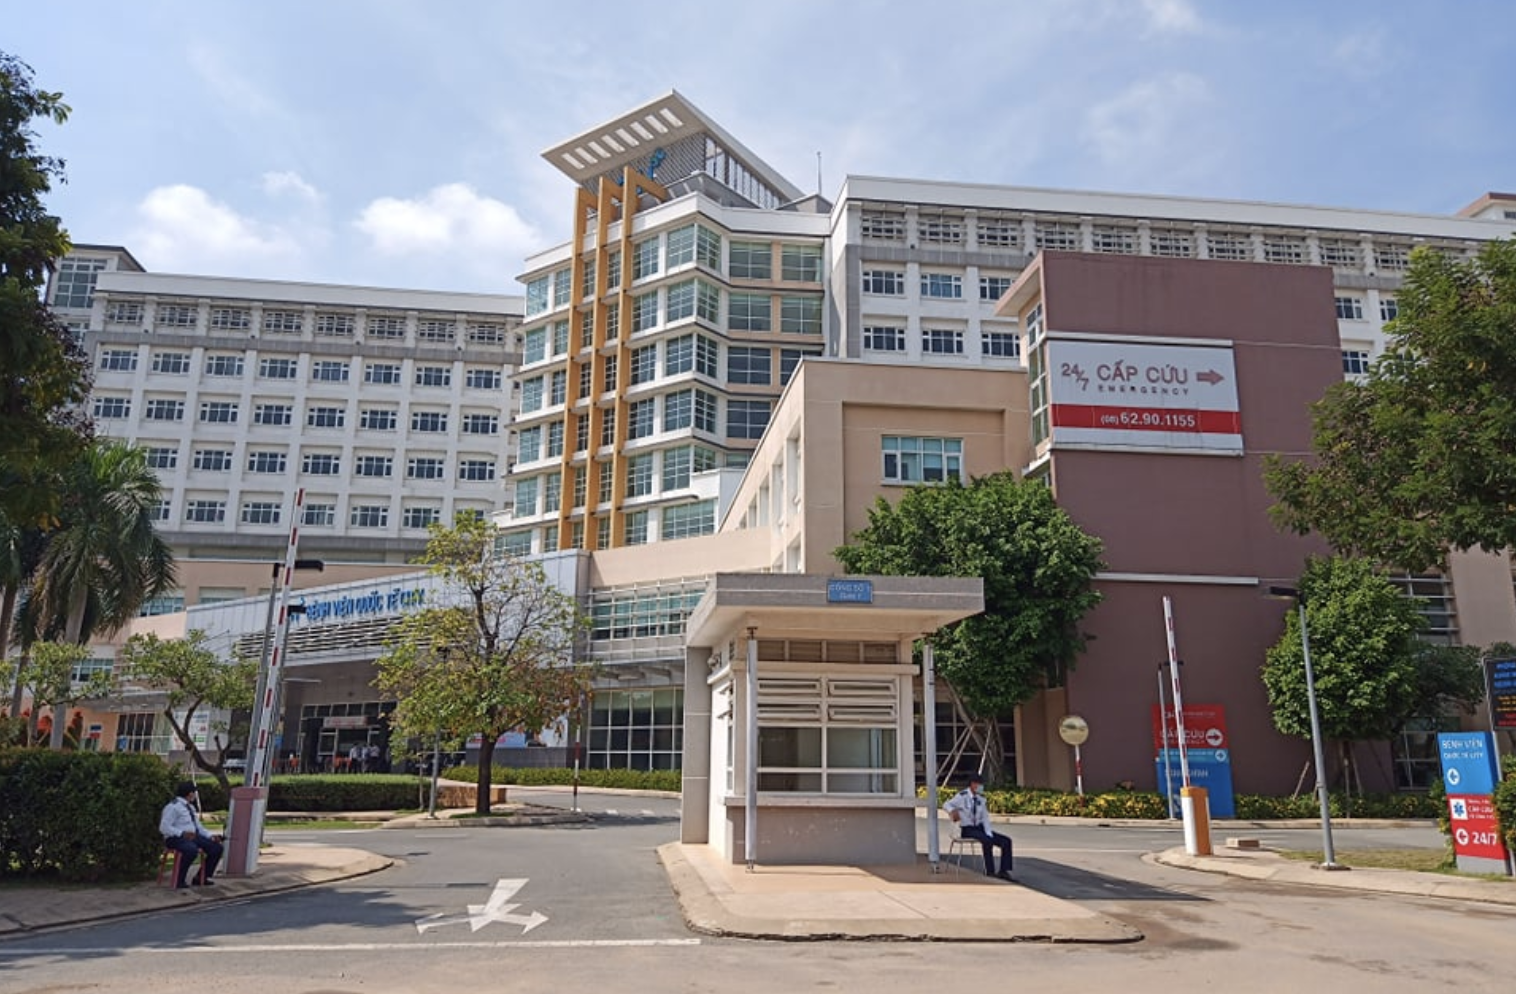 TP.HCM: Bệnh viện Quốc tế City tạm ngưng hoạt động lần thứ 3, chưa biết khi nào mở lại vì COVID-19 - Ảnh 1.